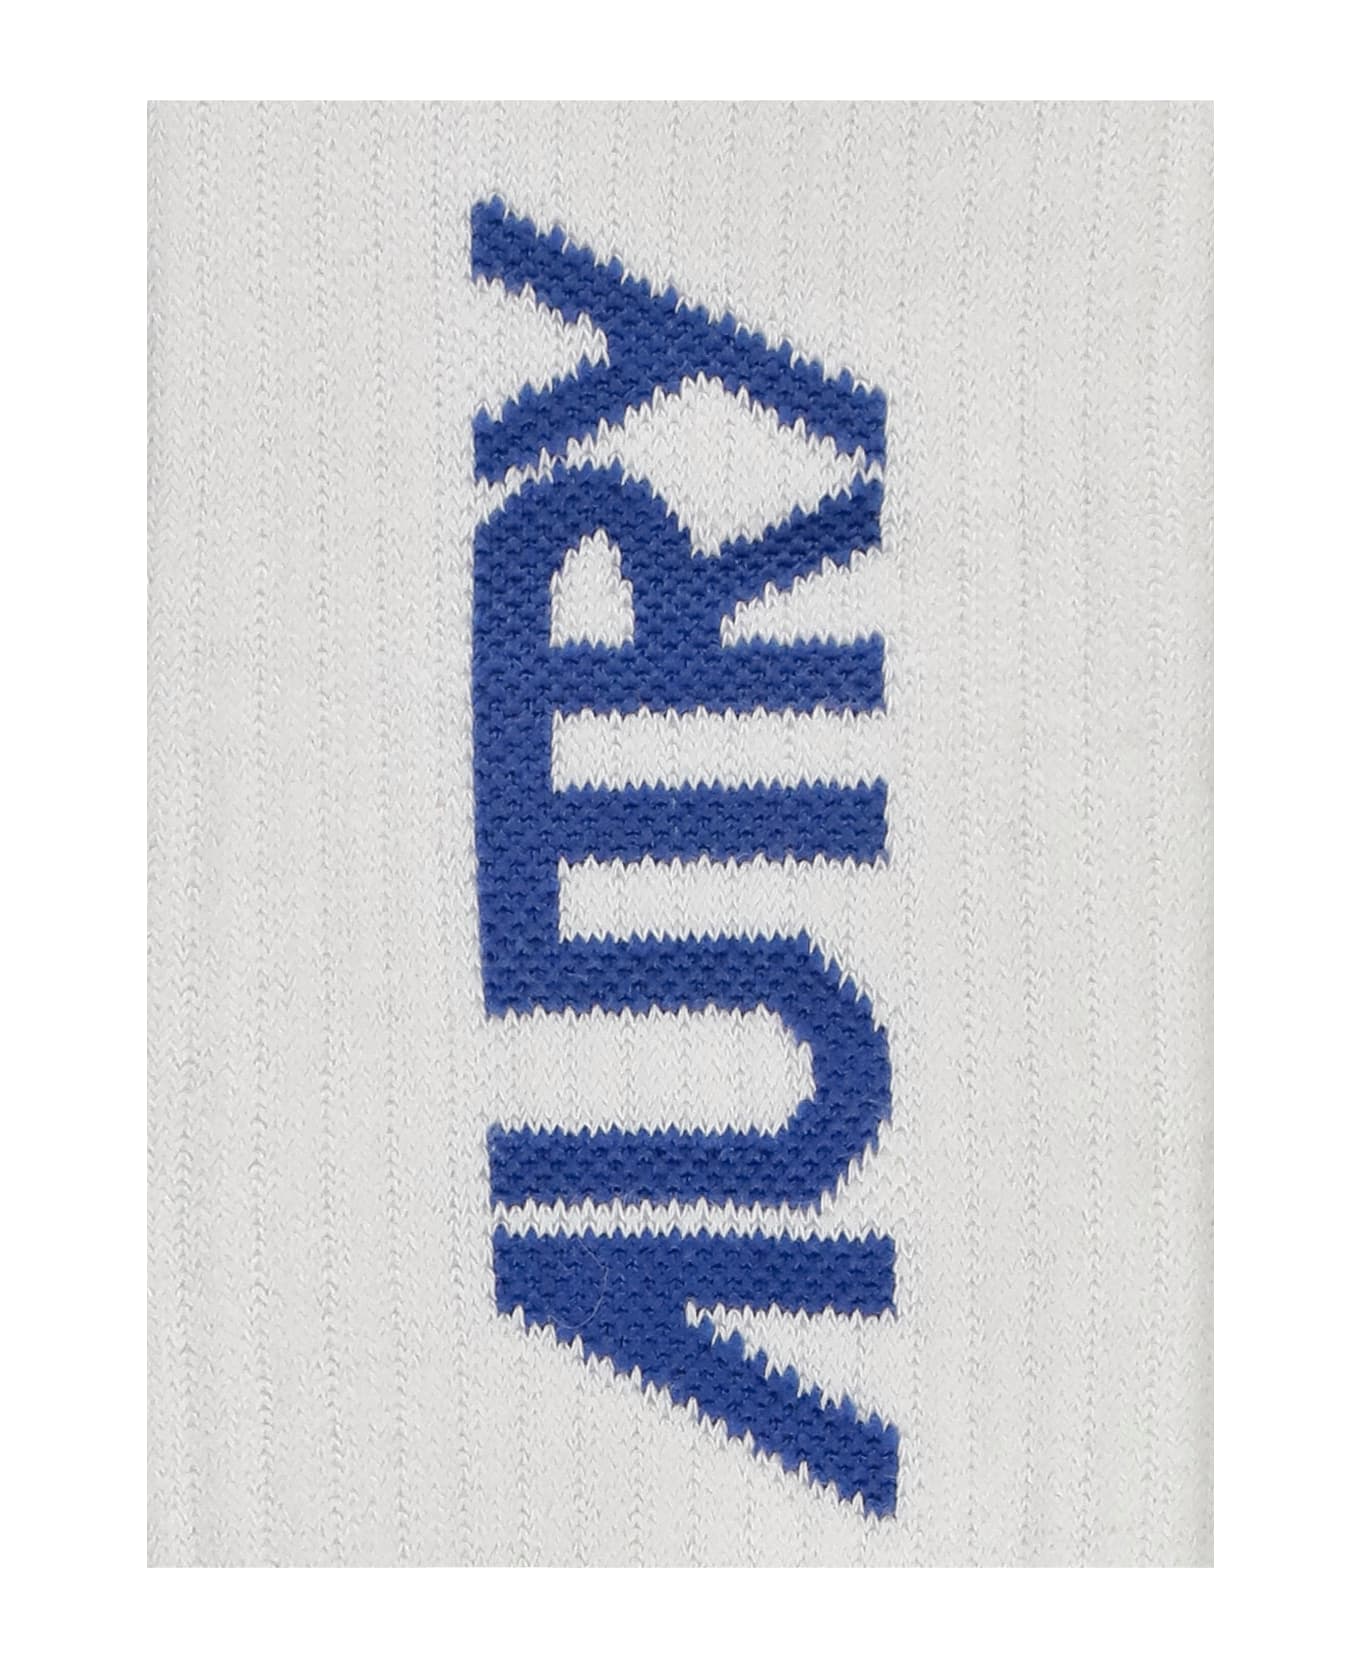 Autry Logoed Socks - White